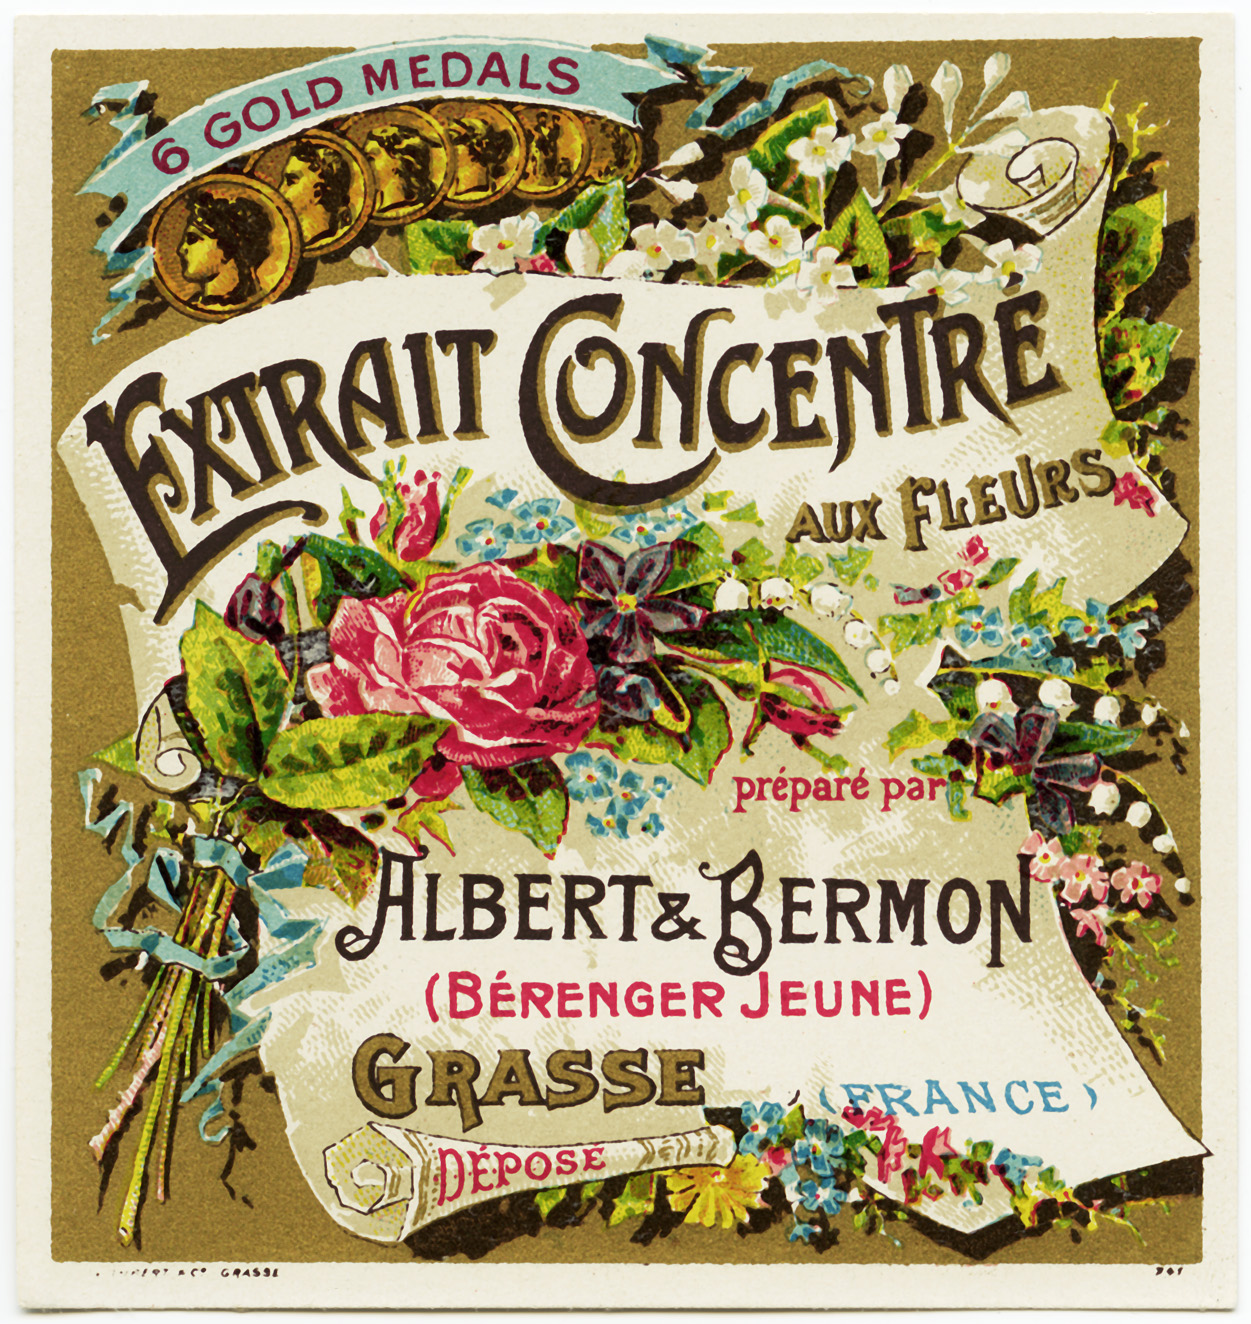 free vintage french label, extrait concentre aux fleurs, albert bermon, antique beauty label, old perfume label